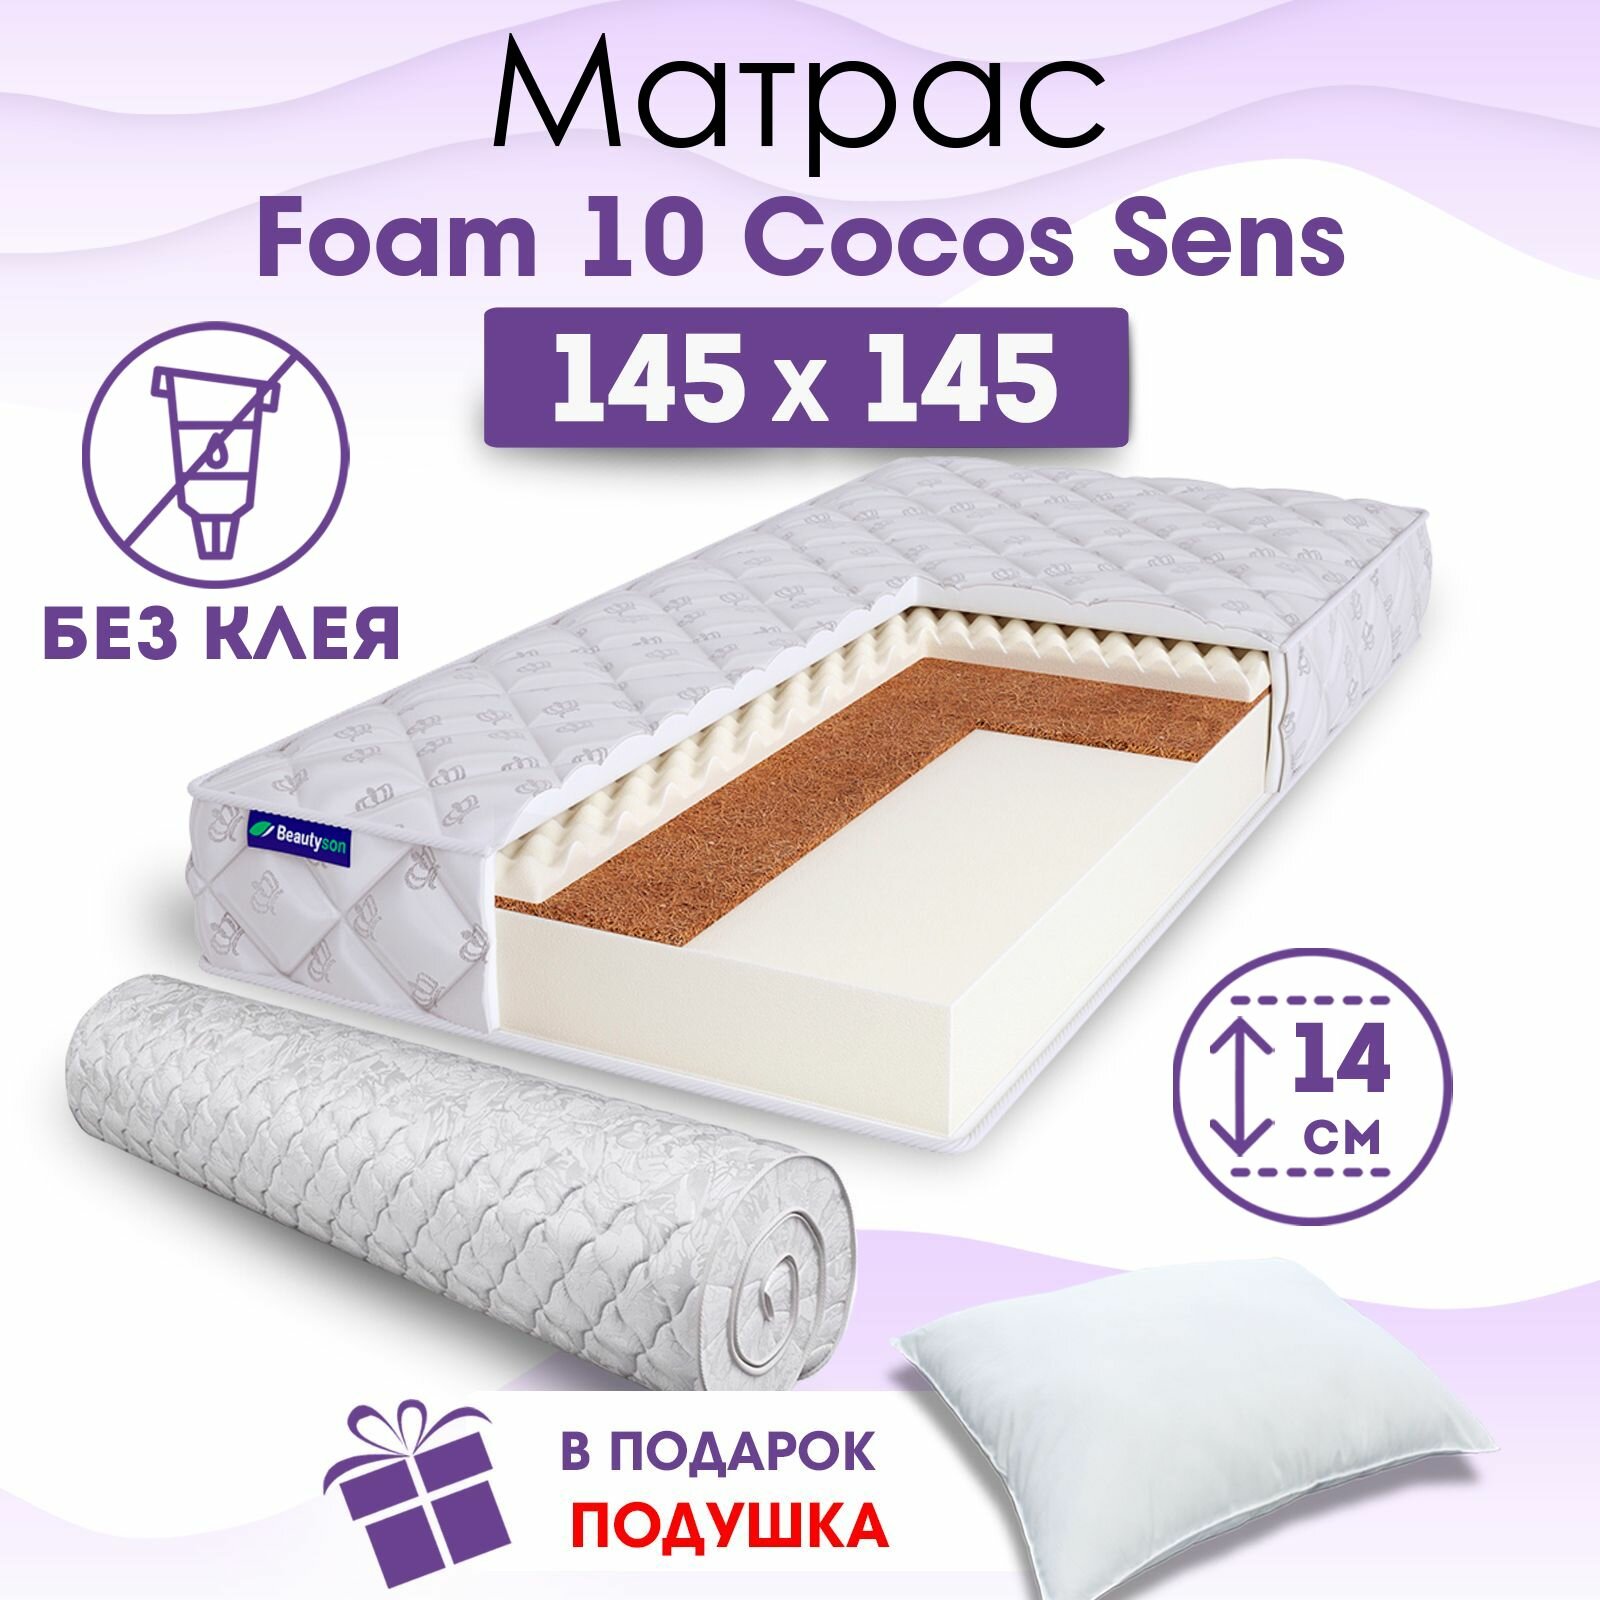 Ортопедический матрас Beautyson Foam 10 Cocos Sens без клея, 145х145, 14 см, беспружинный, двуспальный, на кровать, для дивана, умеренно мягкий